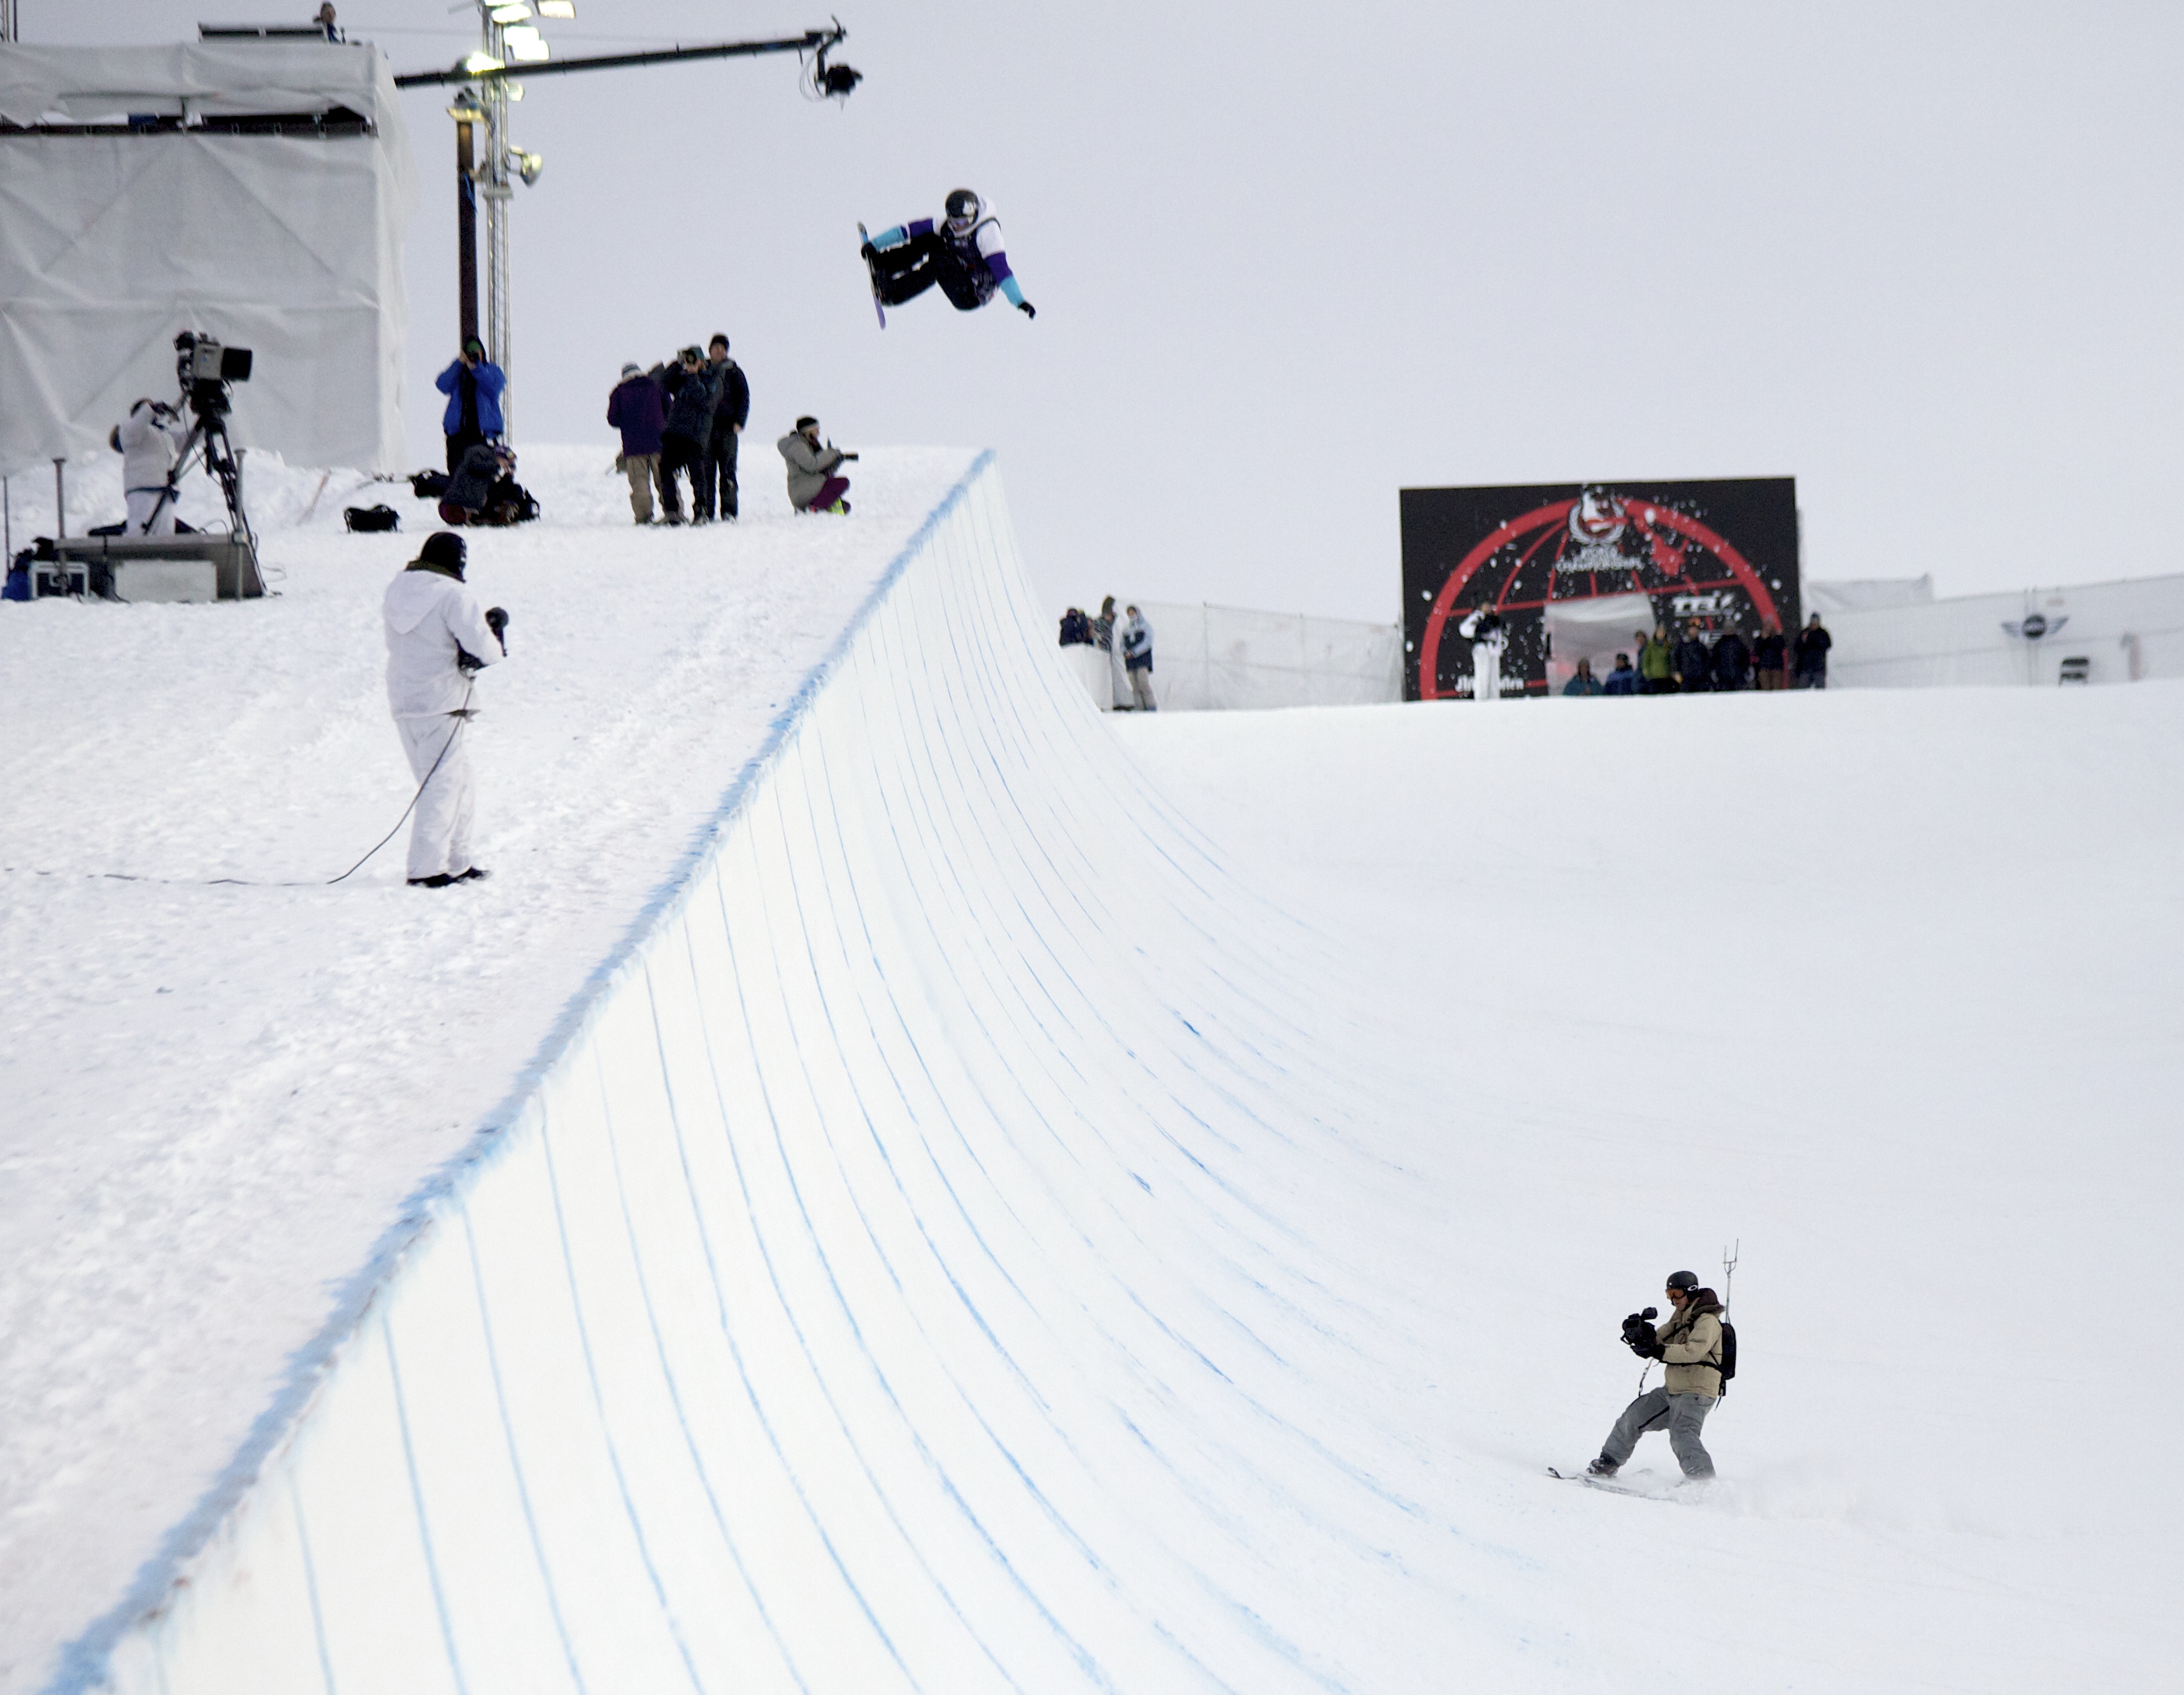 Jon Håtveit følger utøverne ned både halfpipe og slope, med sendesekk på ryggen, kamera i hånden og ski på bena.